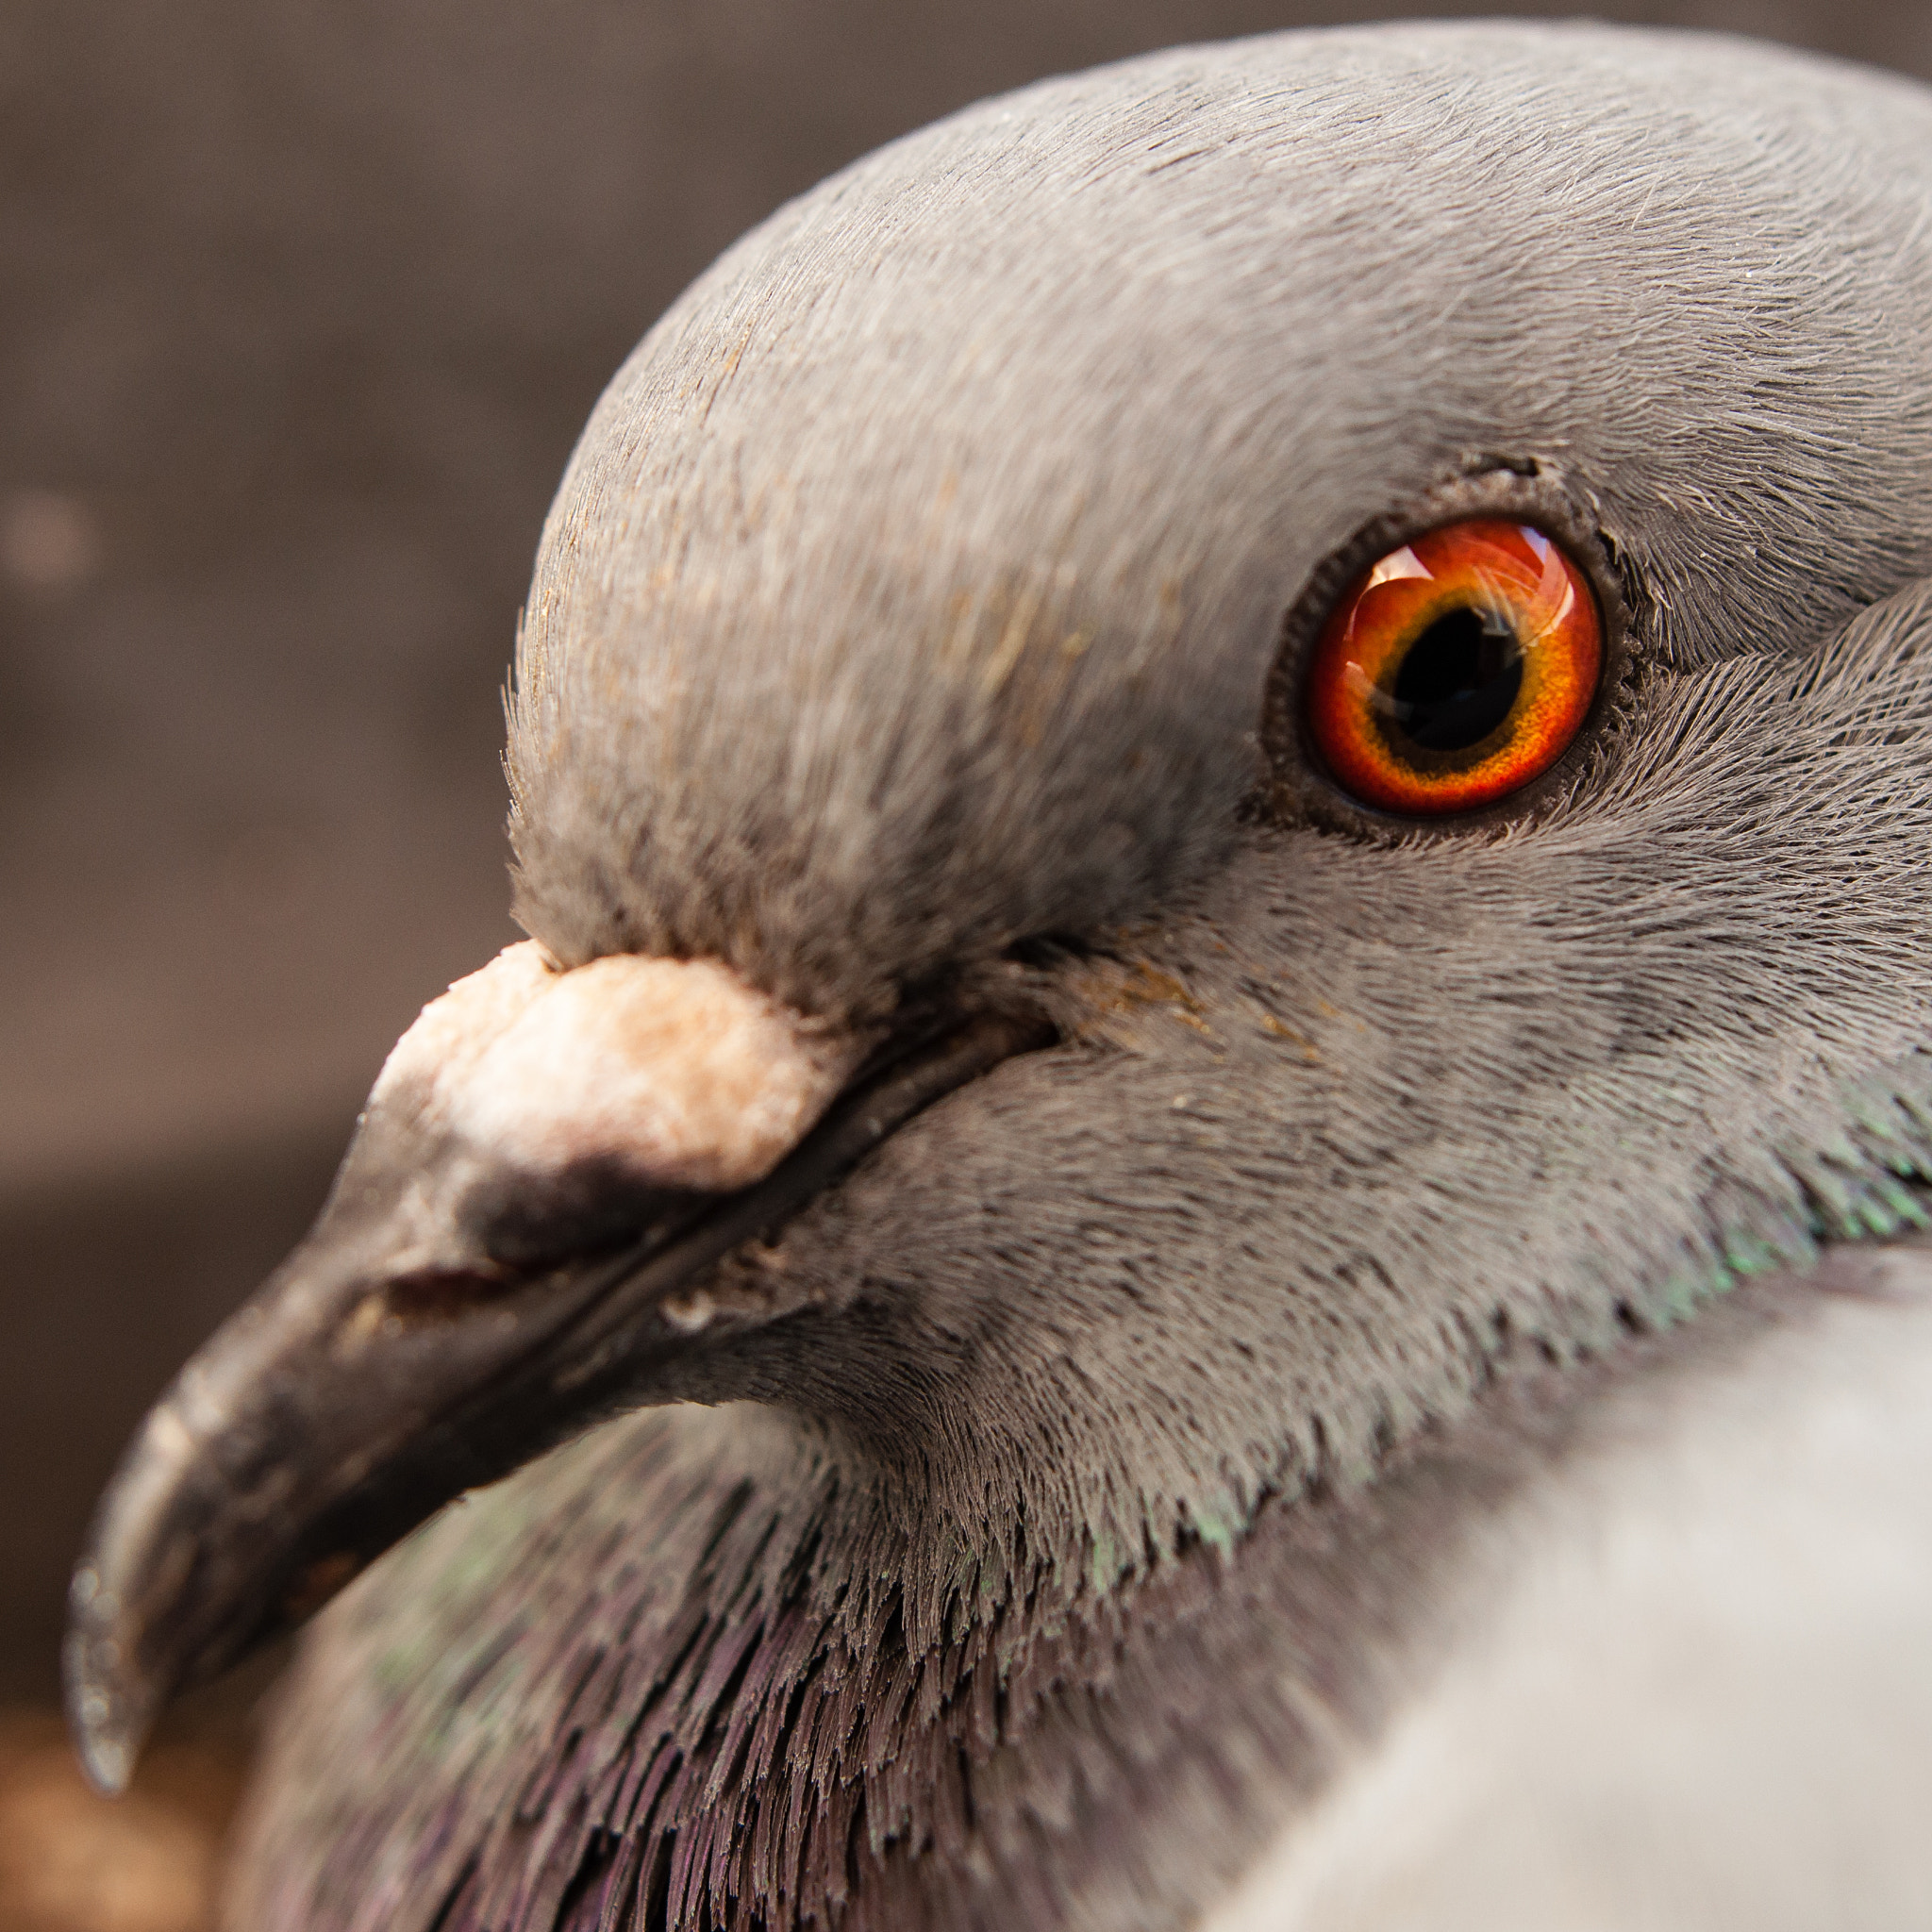 Nikon D90 sample photo. Pigeon portrait photography